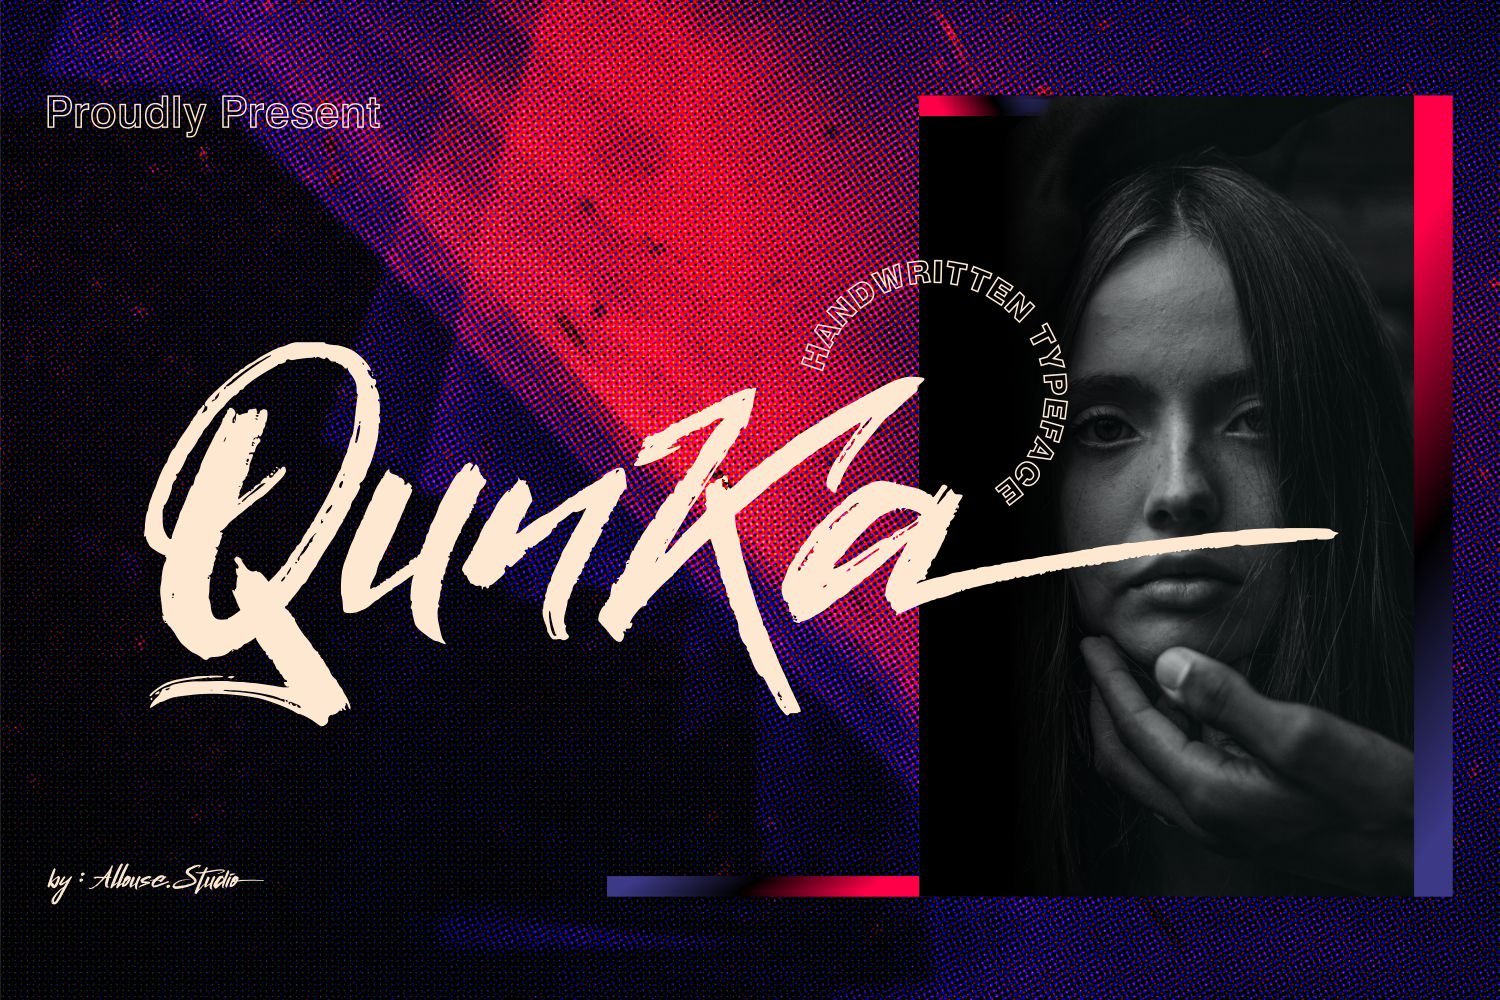 Qunka Font cover image.